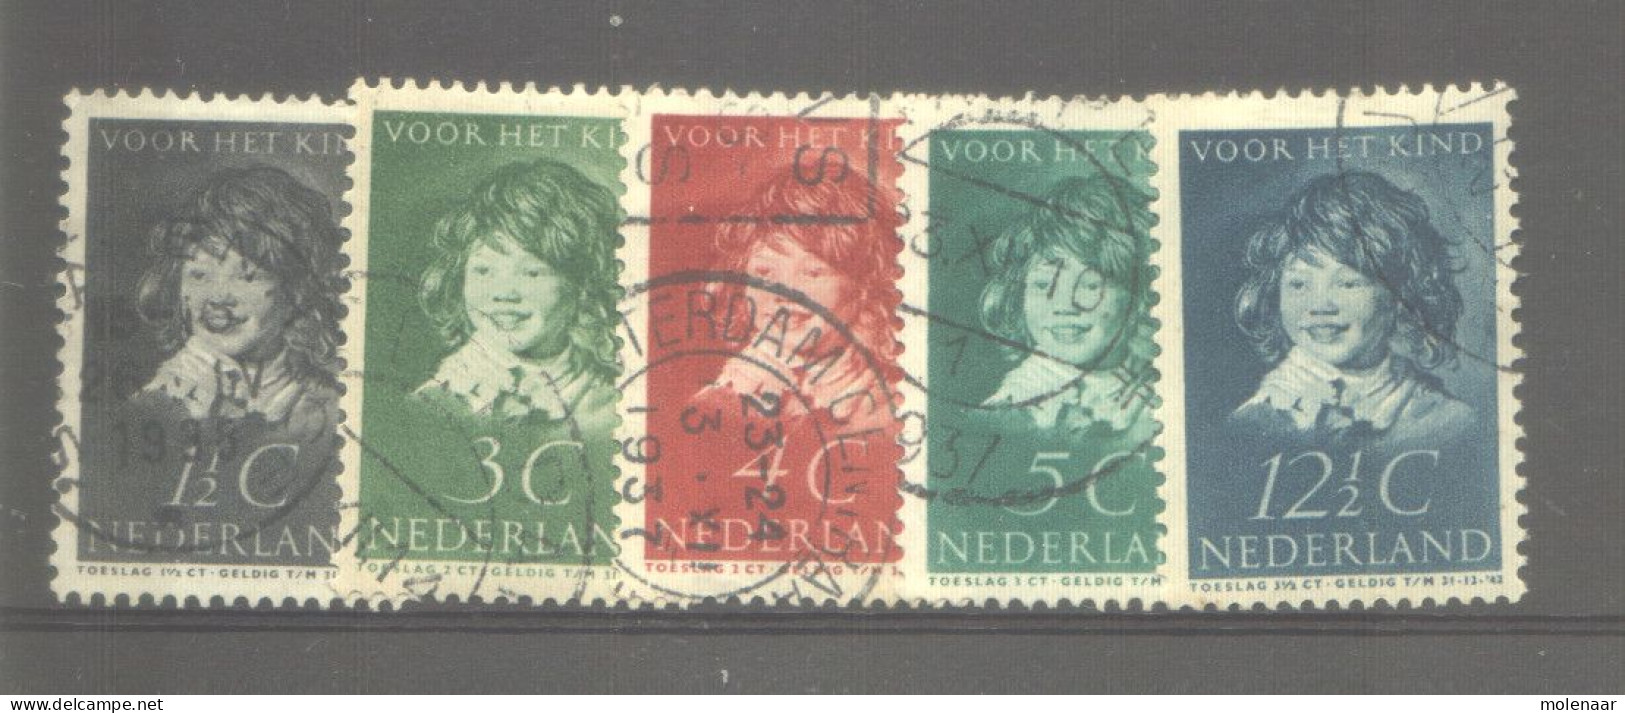 Postzegels > Europa > Nederland > Periode 1891-1948 (Wilhelmina) > 1891-1909 > 300 -304 Gebruikt (11769) - Gebruikt